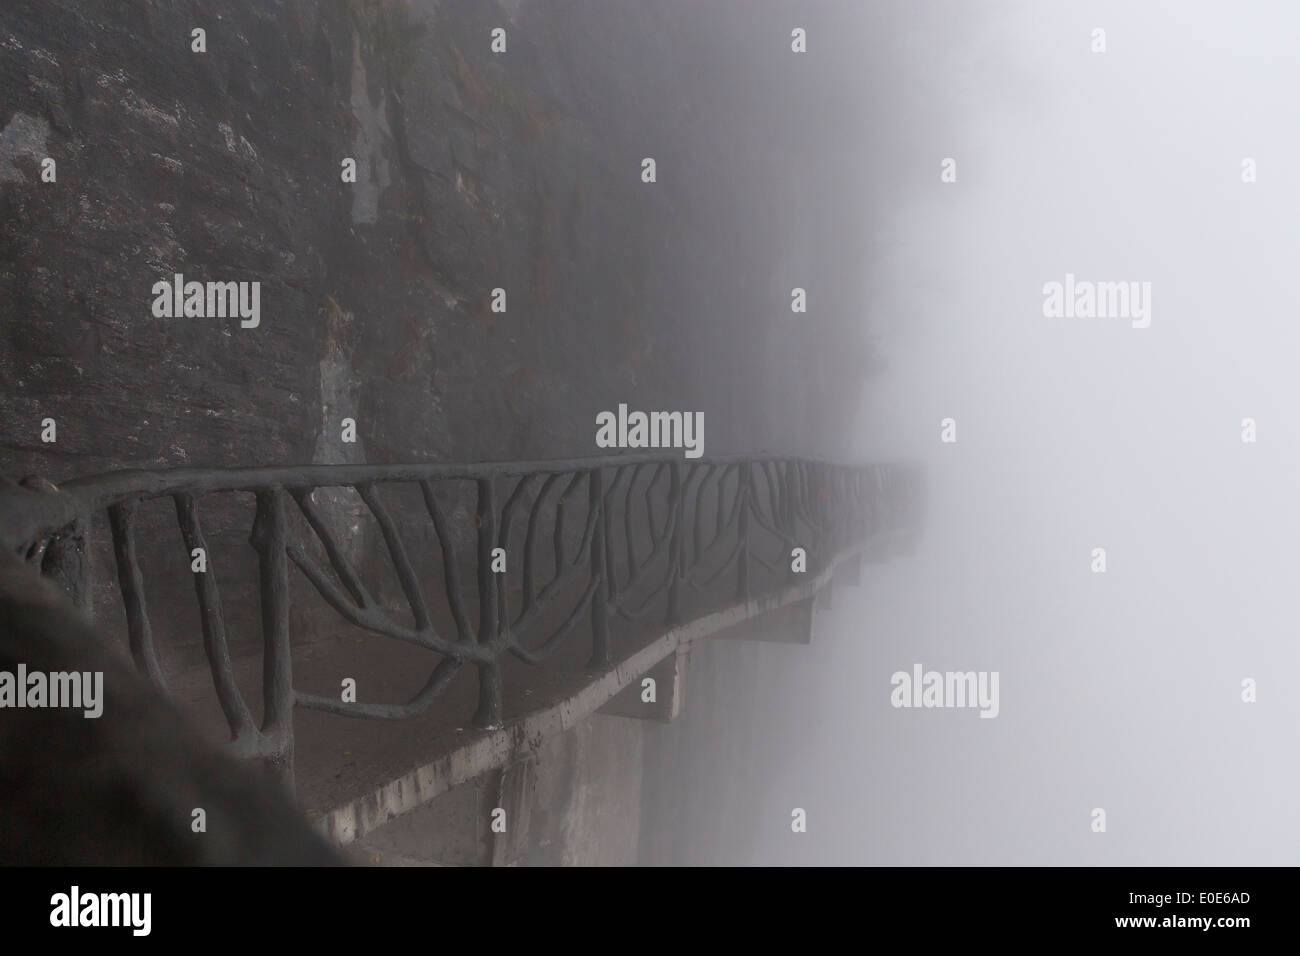 China Zhangjiajie Tianmen Mountain Heavenly Gate glass walk Stock Photo